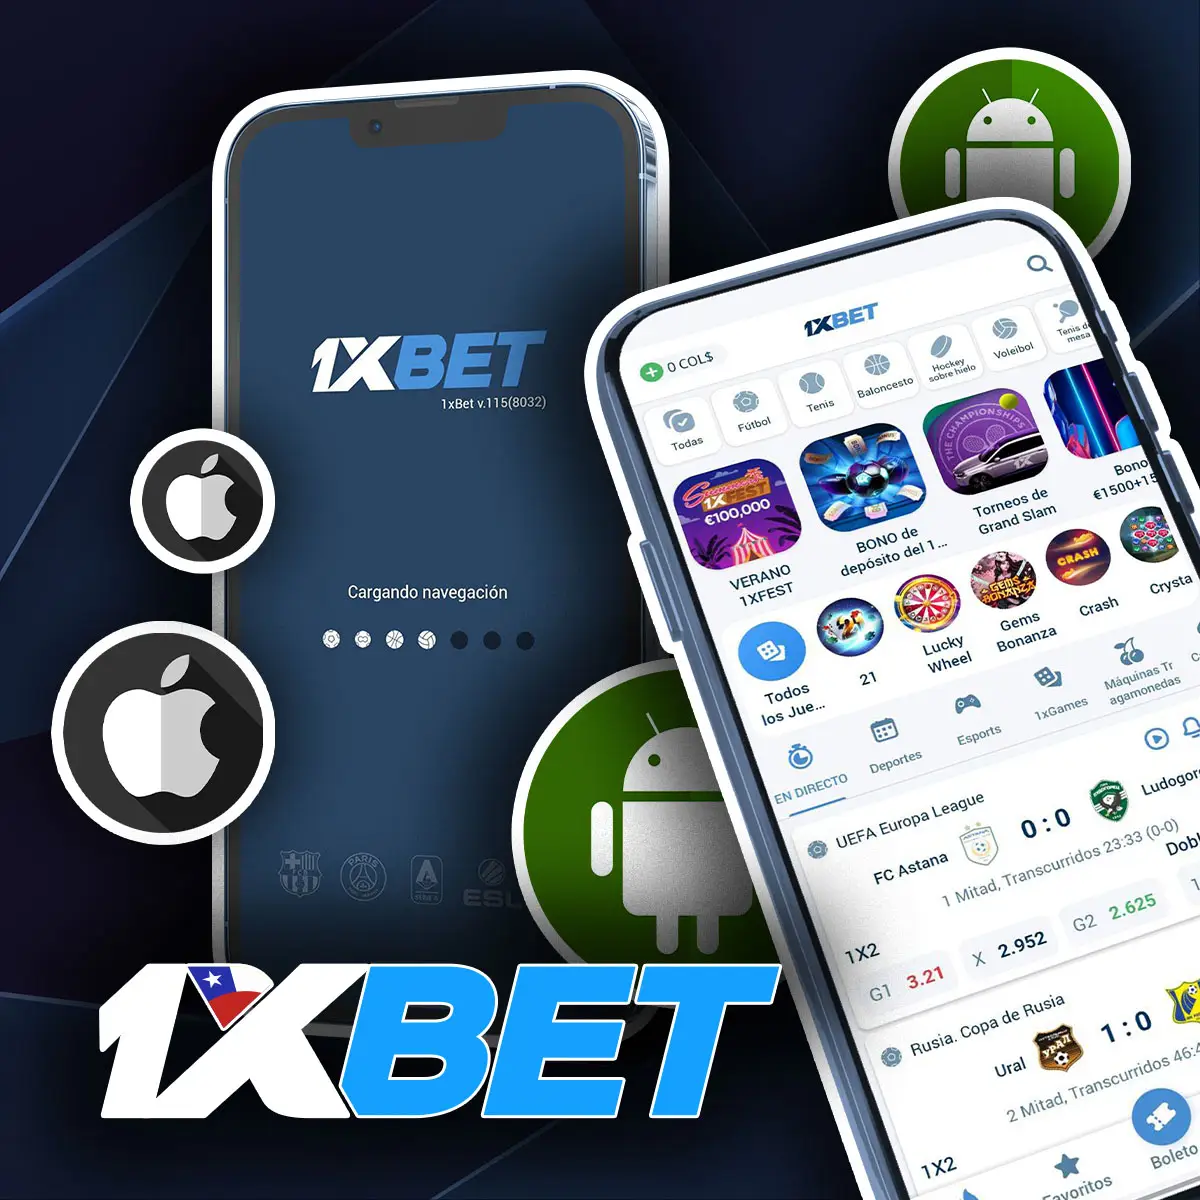 1xbet mejor app móvil de apuestas deportivas para android e ios en Chile